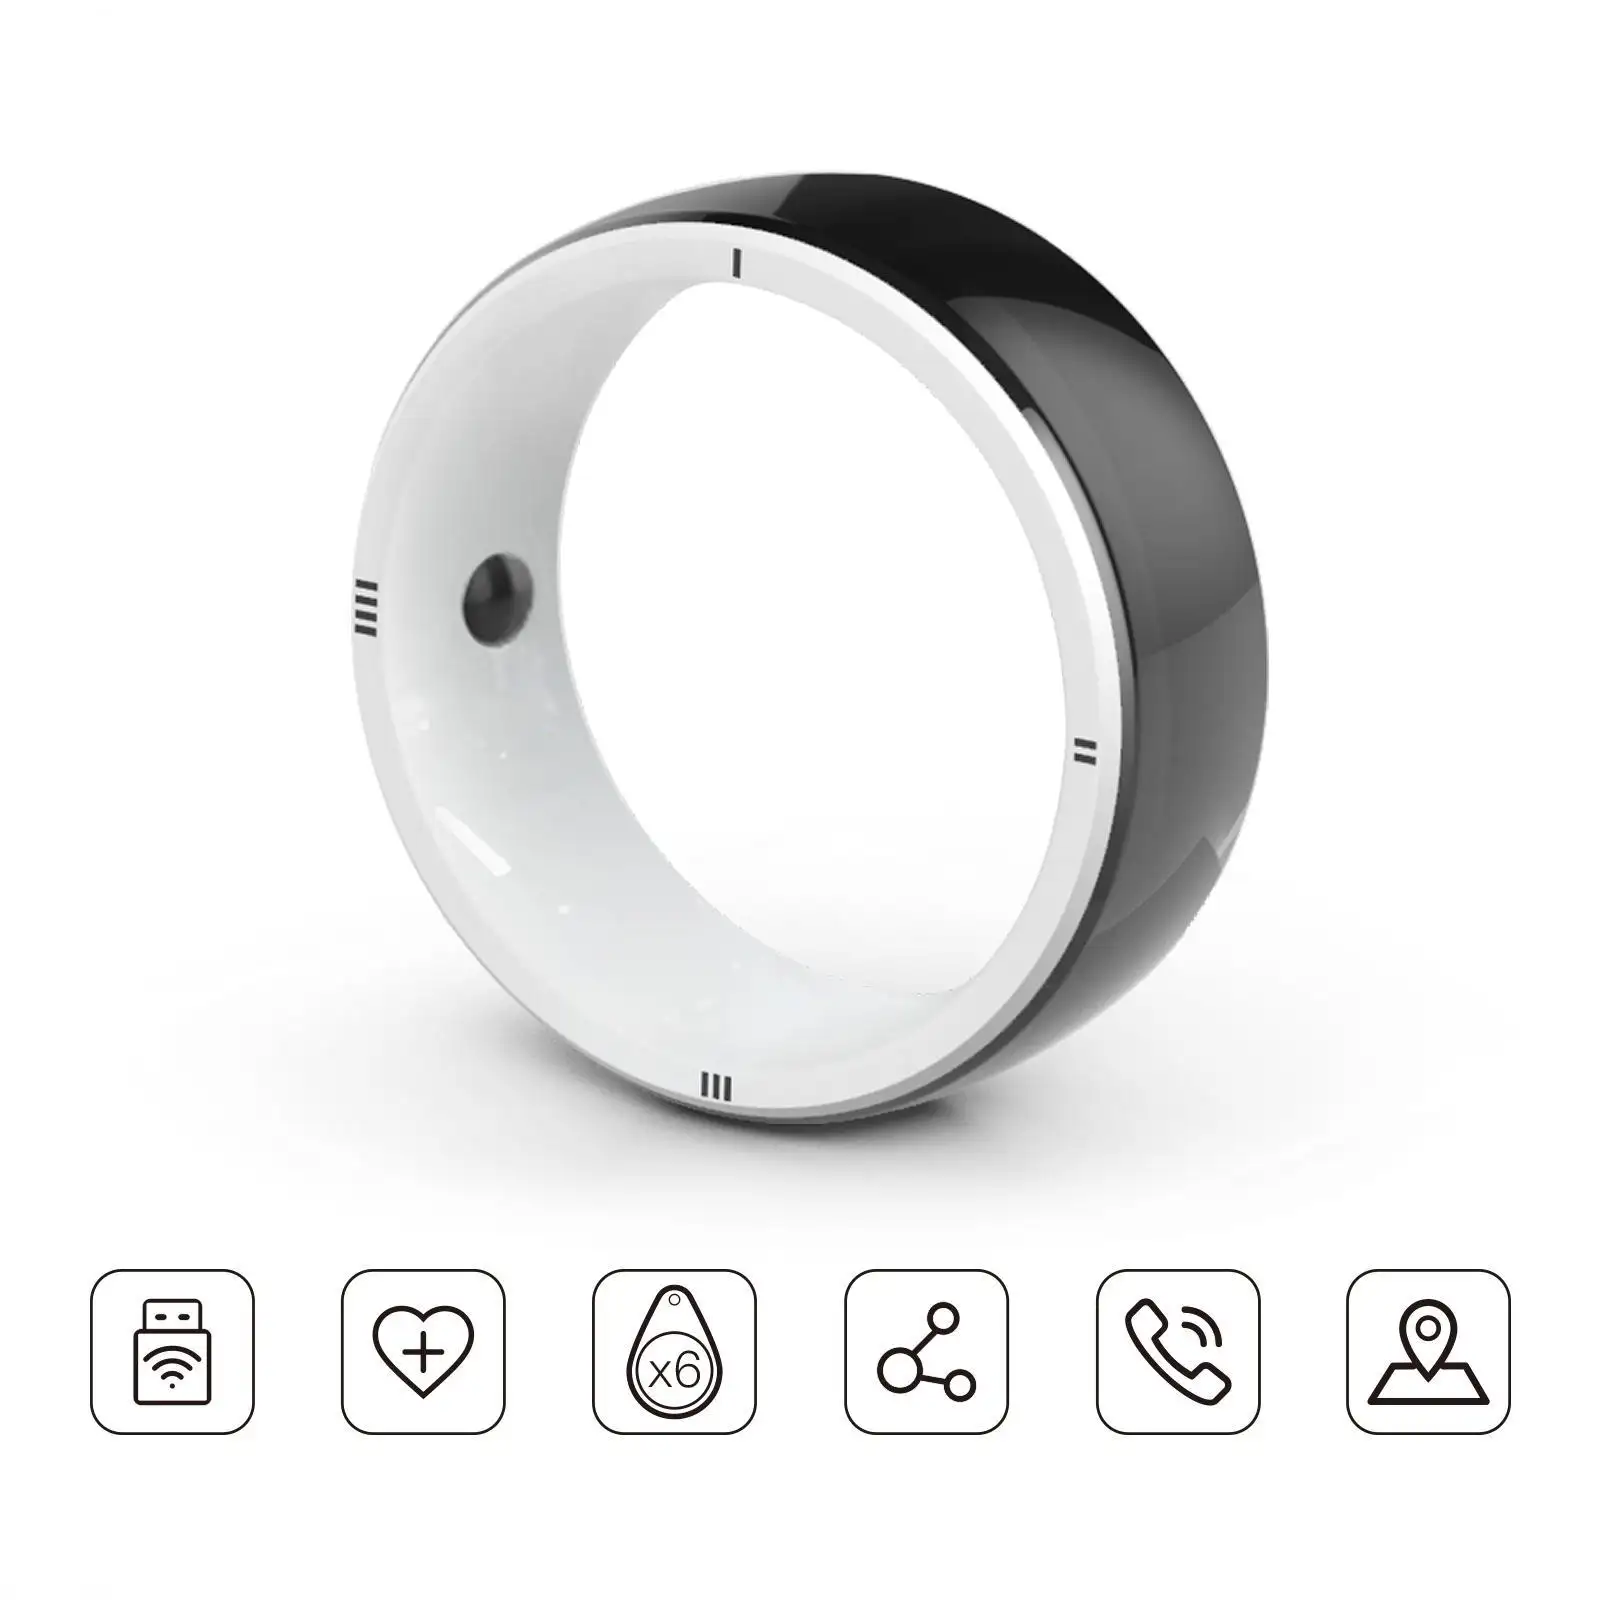 Anello intelligente JAKCOM R5 nuovo anello intelligente bello di kuch kuch superficie 3 penna cpu custodia con fornitura durham più veloce usb drive migliore